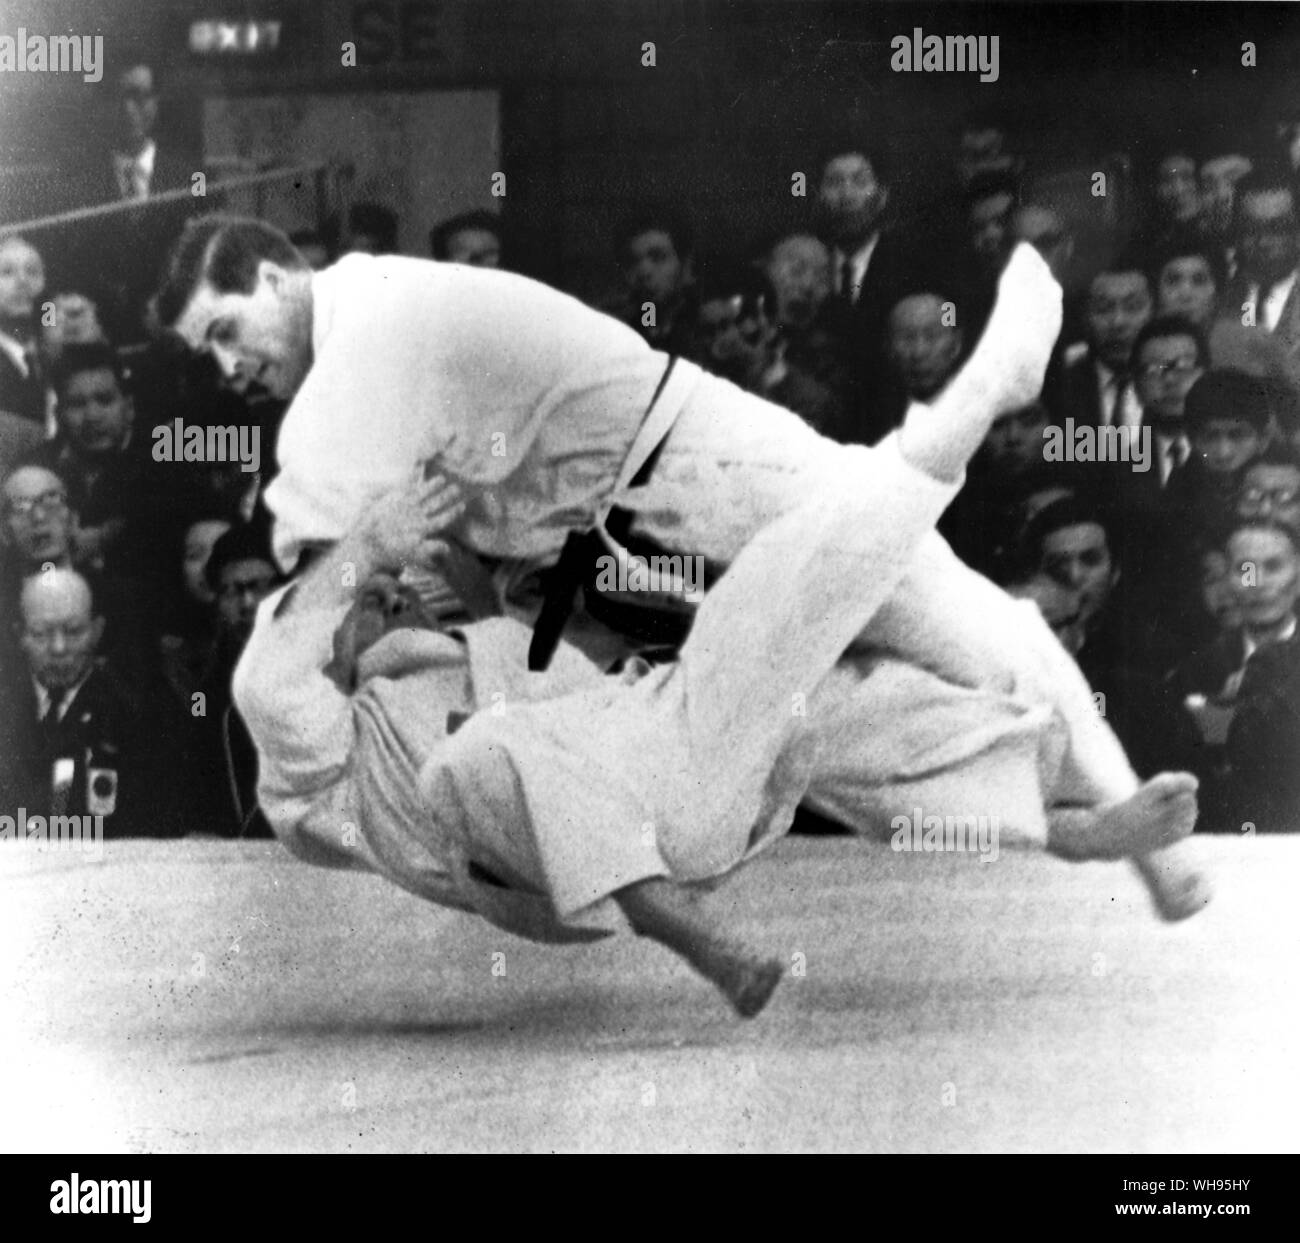 Le Japon, Tokyo Jeux Olympiques, 1964 : Anton Geesink (Pays-Bas) un lancer sur les terres D'UN Petheridge (Grande-Bretagne) au cours de leur combat de judo.. Banque D'Images